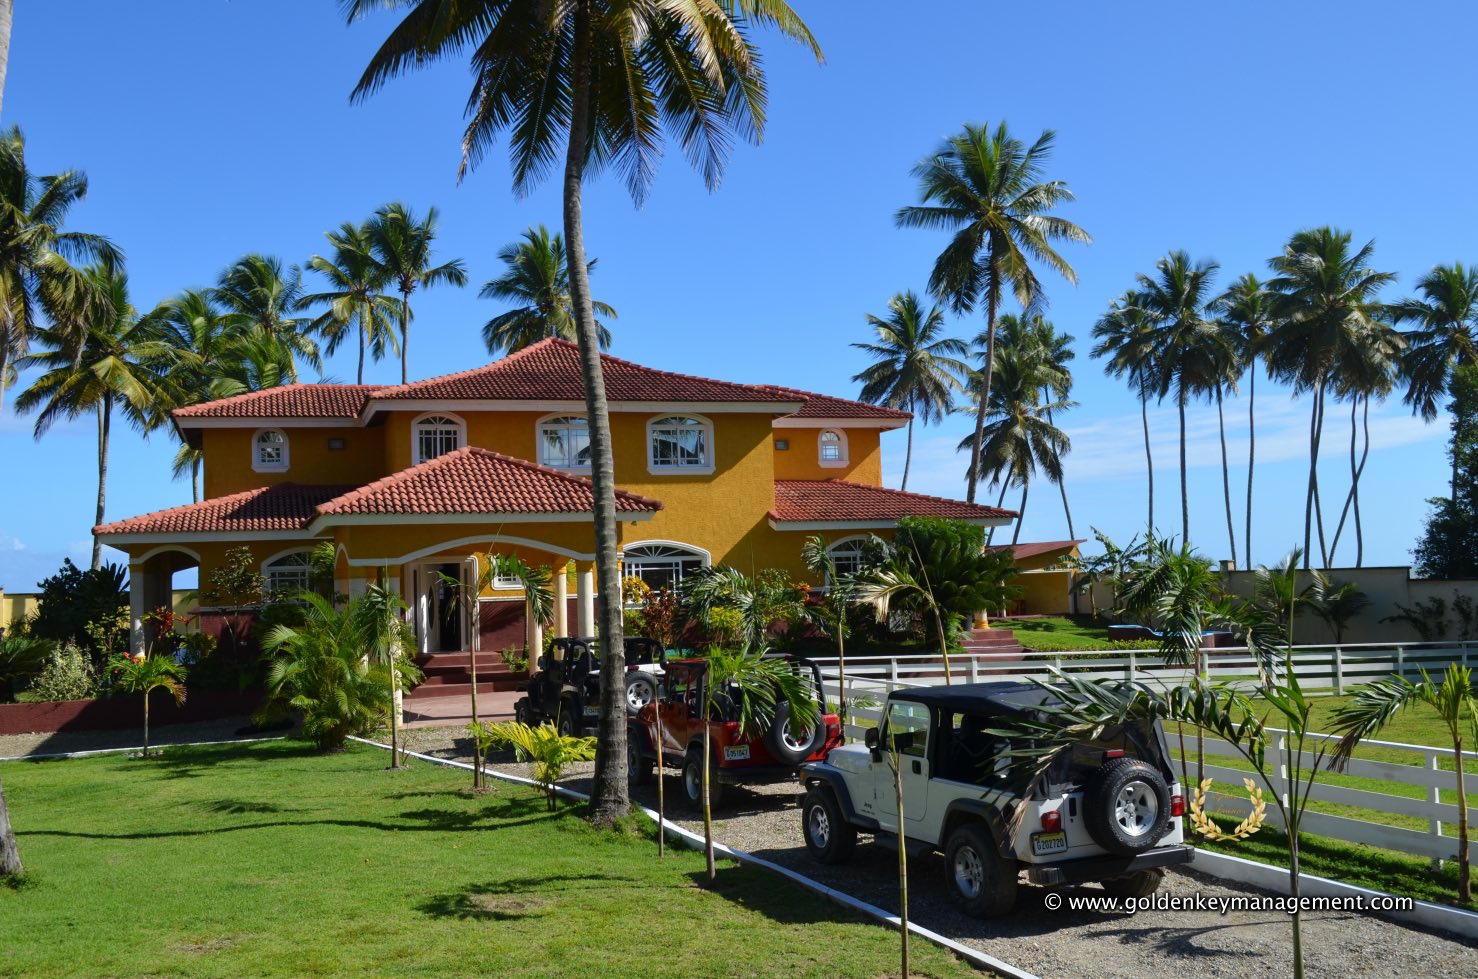 Beach villa sale in Cabarete Dominican Republic